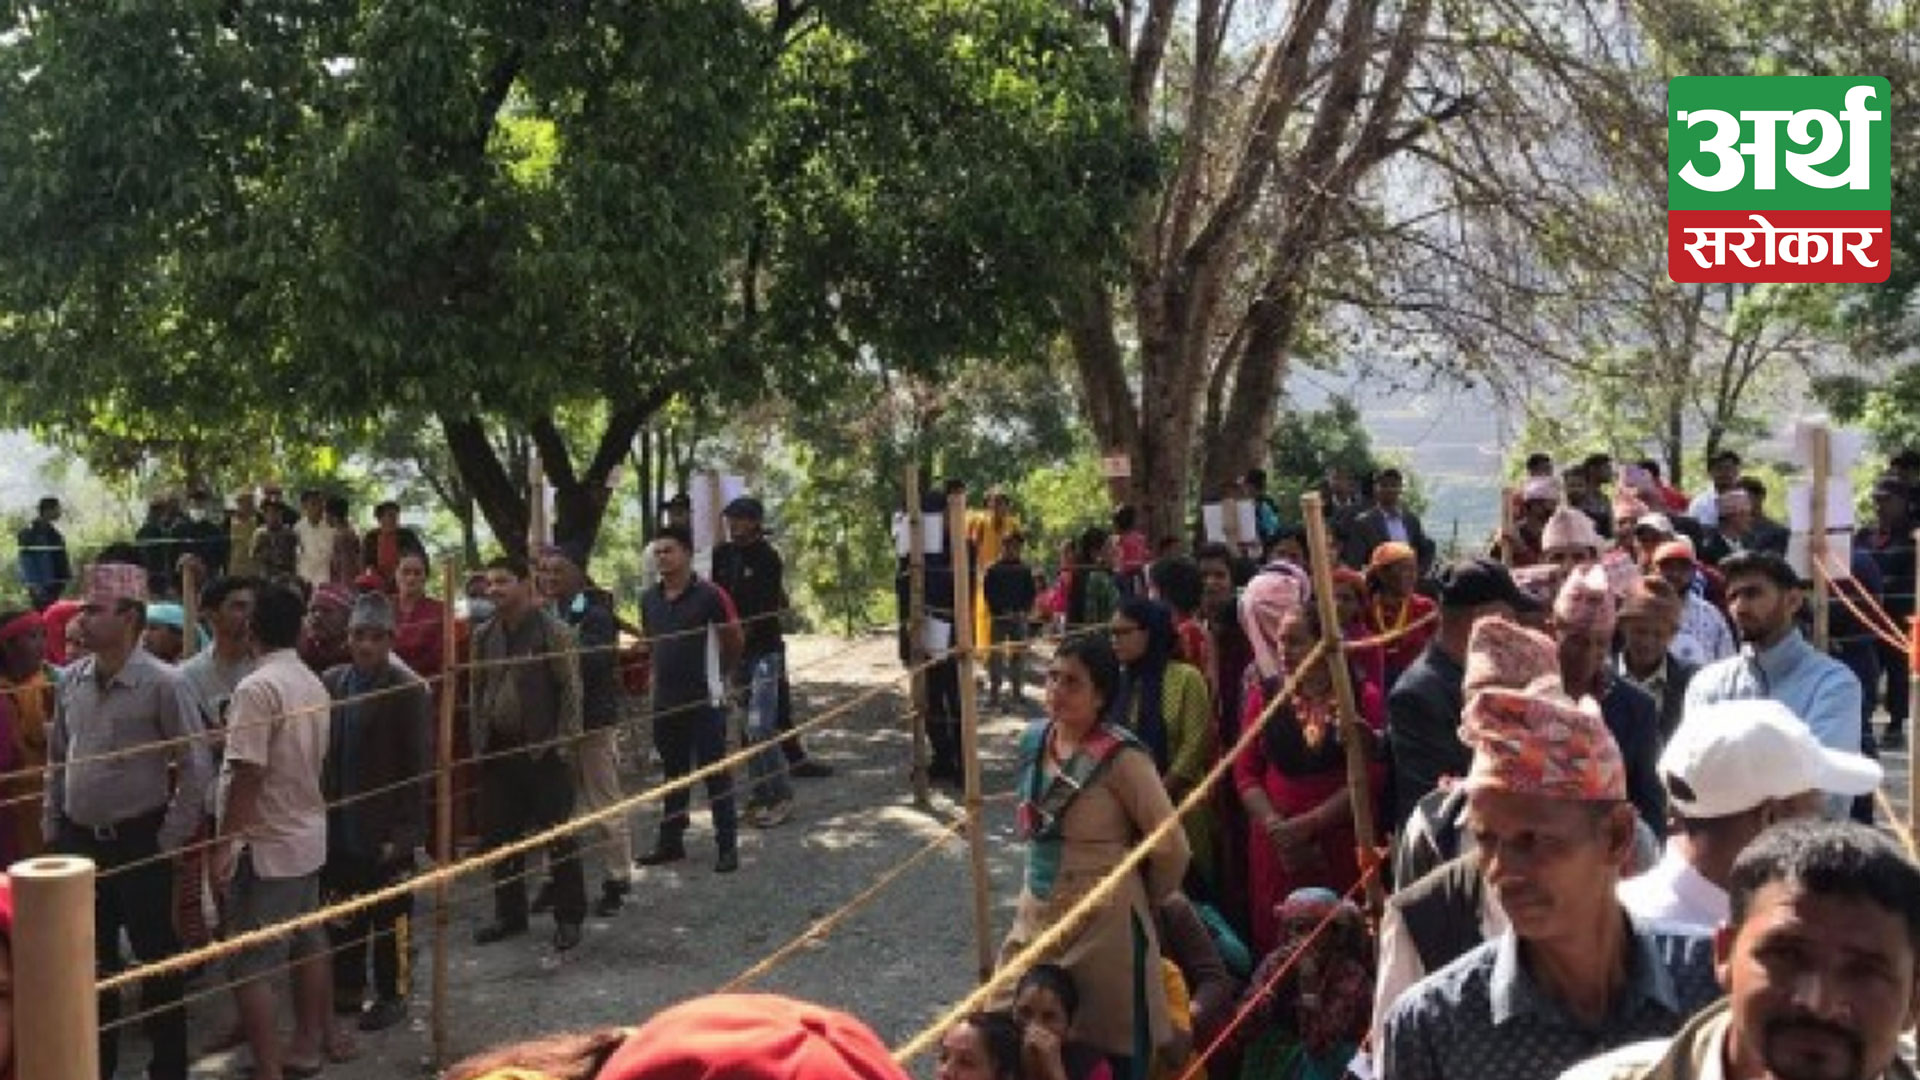 बझाङको जयपृथ्वीमा पुनः मतदान, मतदाताको उत्साहजनक उपस्थिति